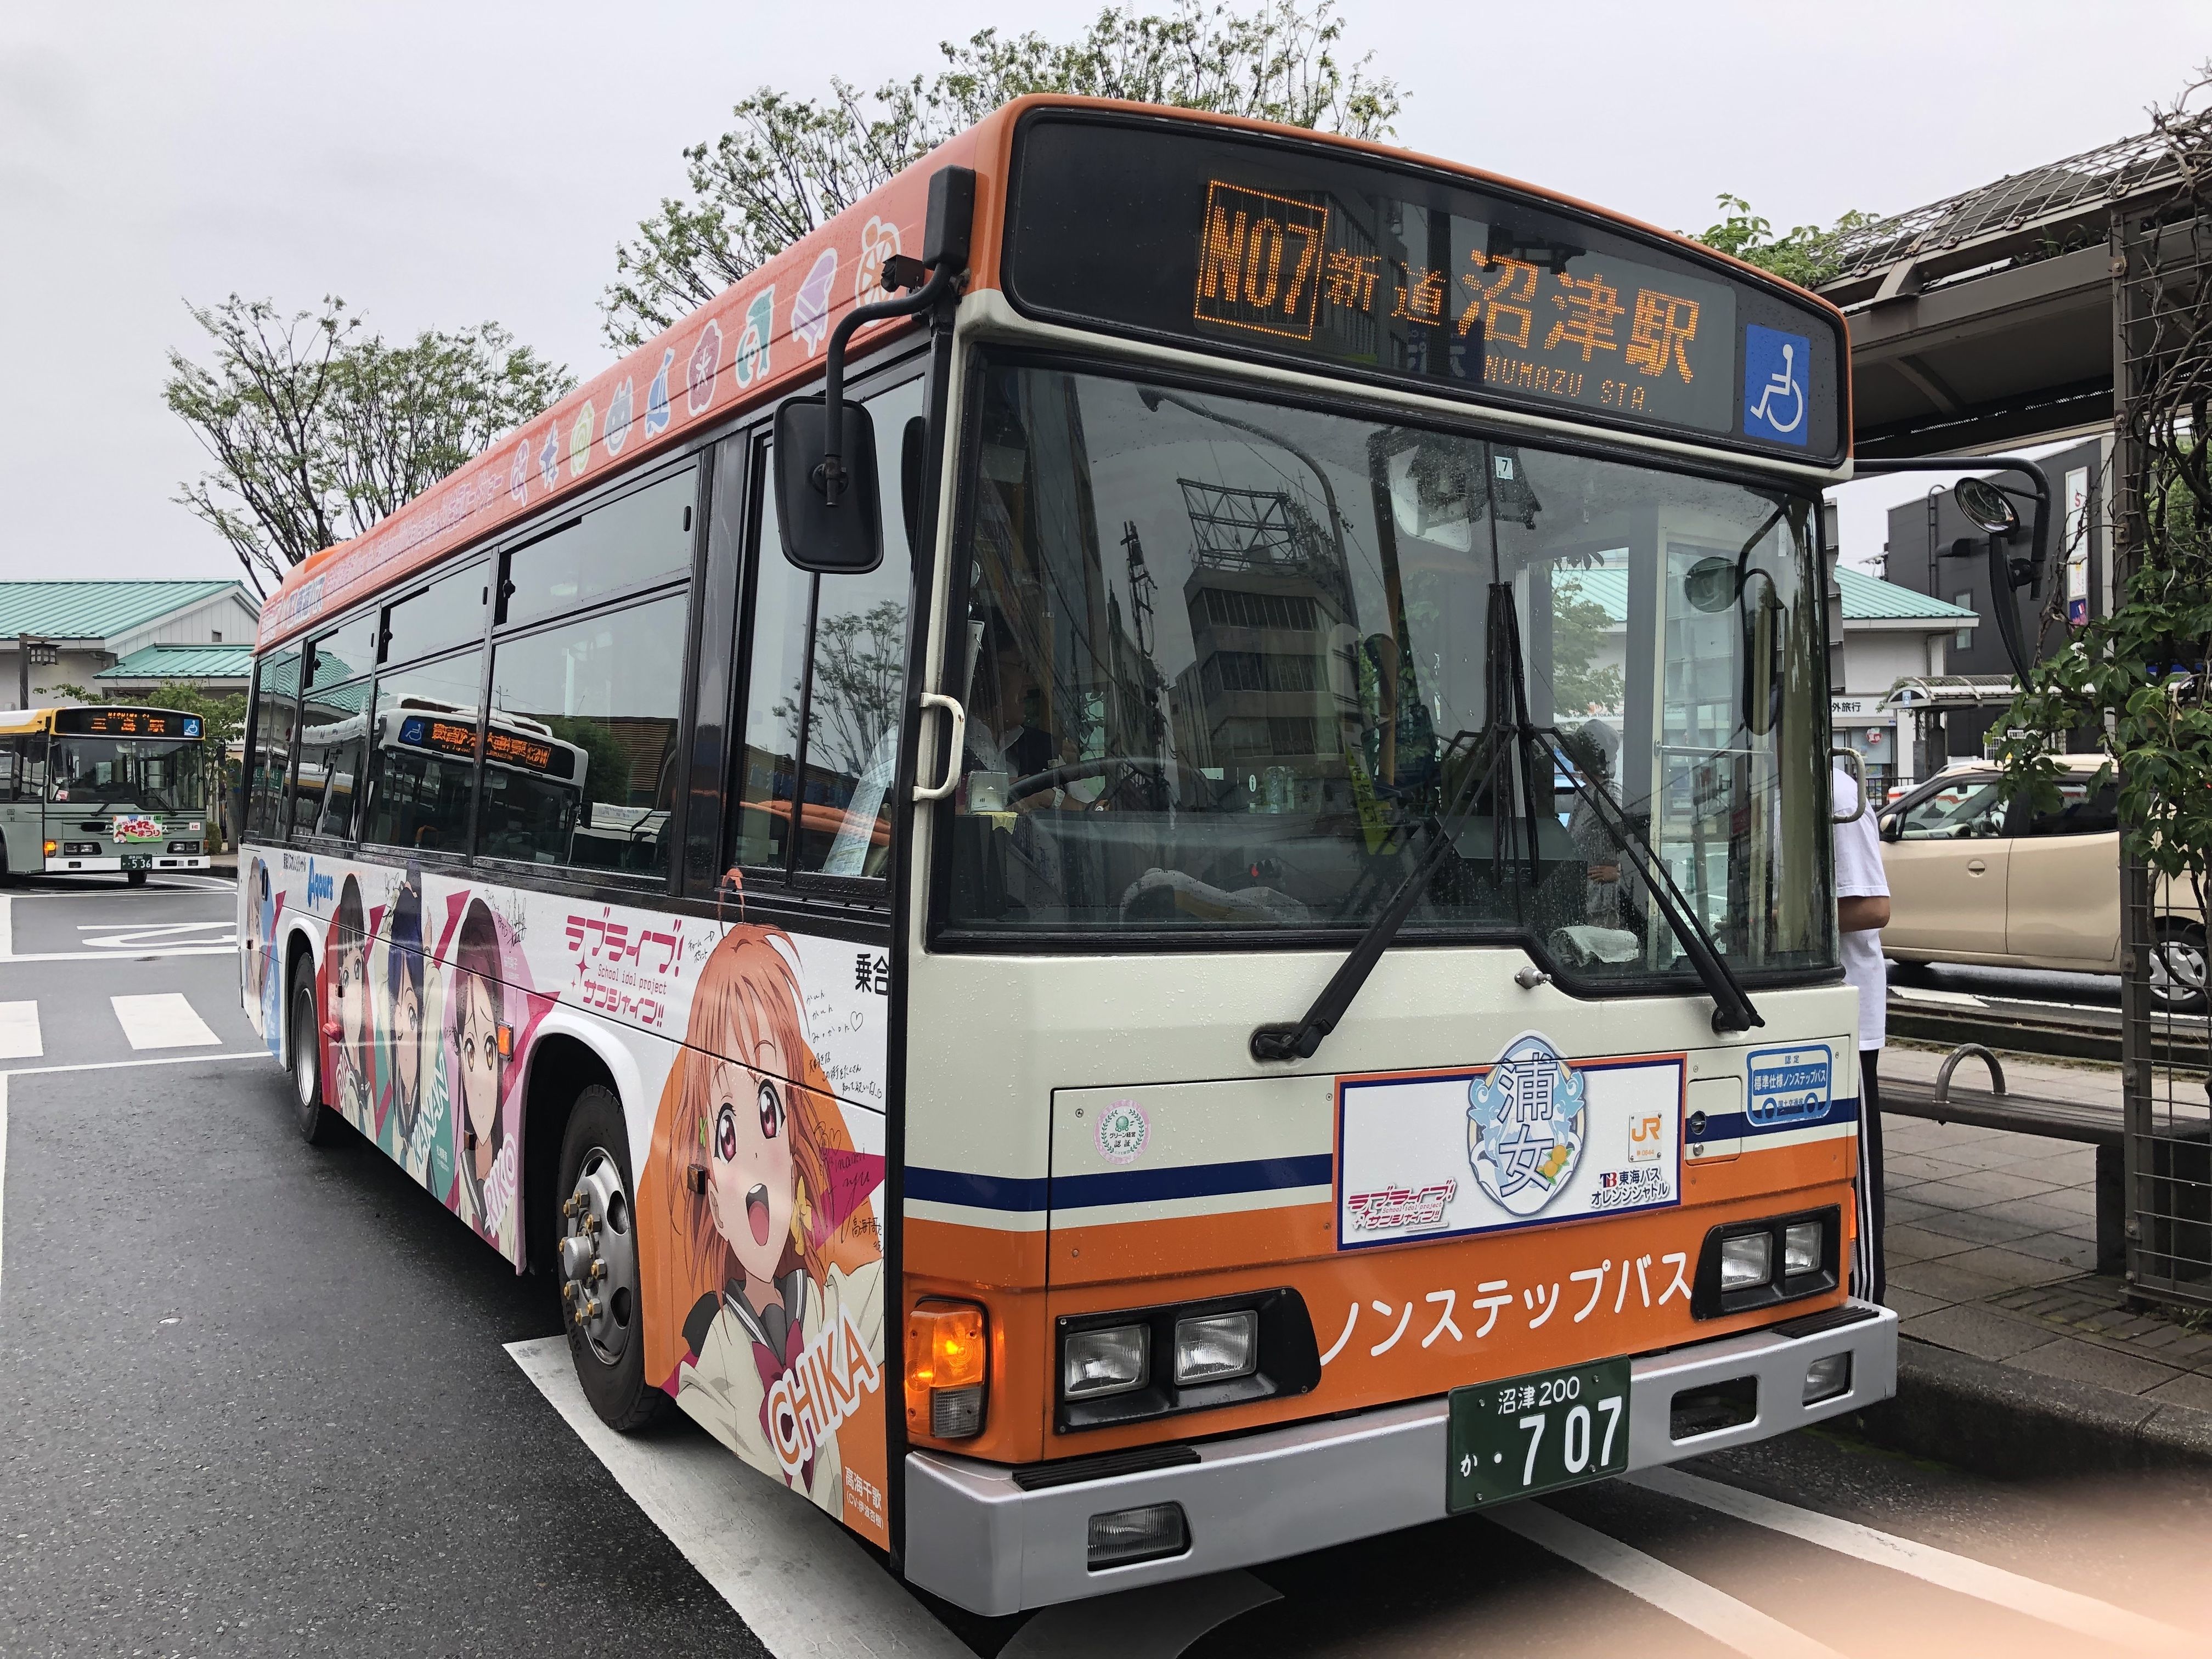 沼津登山東海バス てつきちによる日本の乗り物 電車 バス 飛行機